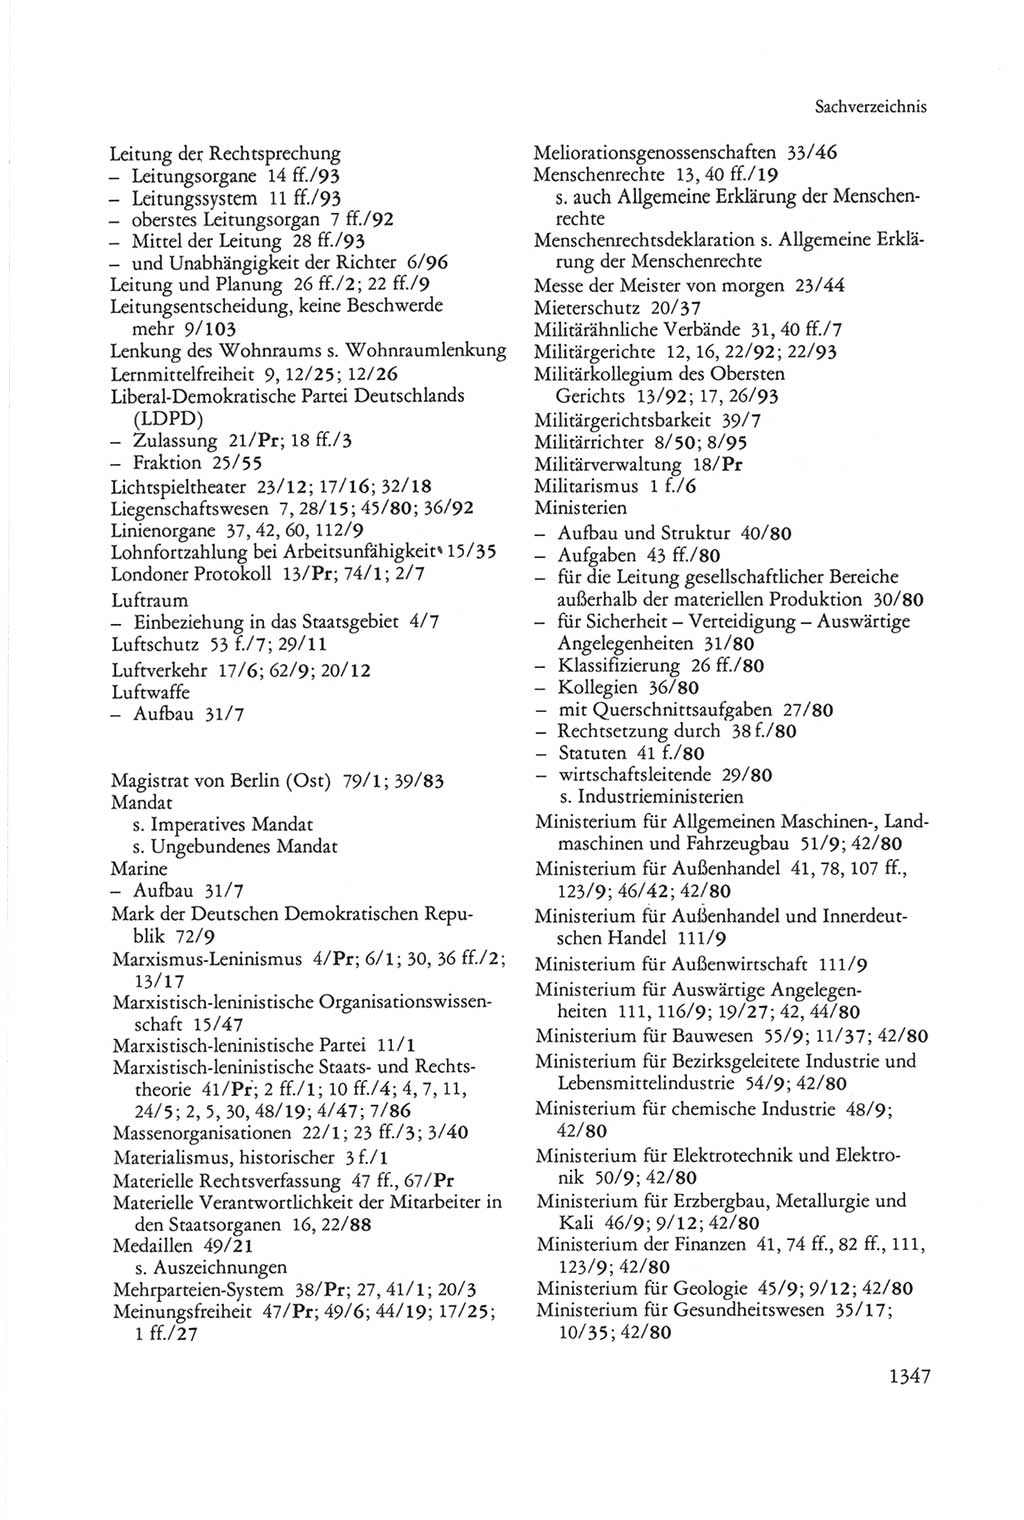 Die sozialistische Verfassung der Deutschen Demokratischen Republik (DDR), Kommentar 1982, Seite 1347 (Soz. Verf. DDR Komm. 1982, S. 1347)